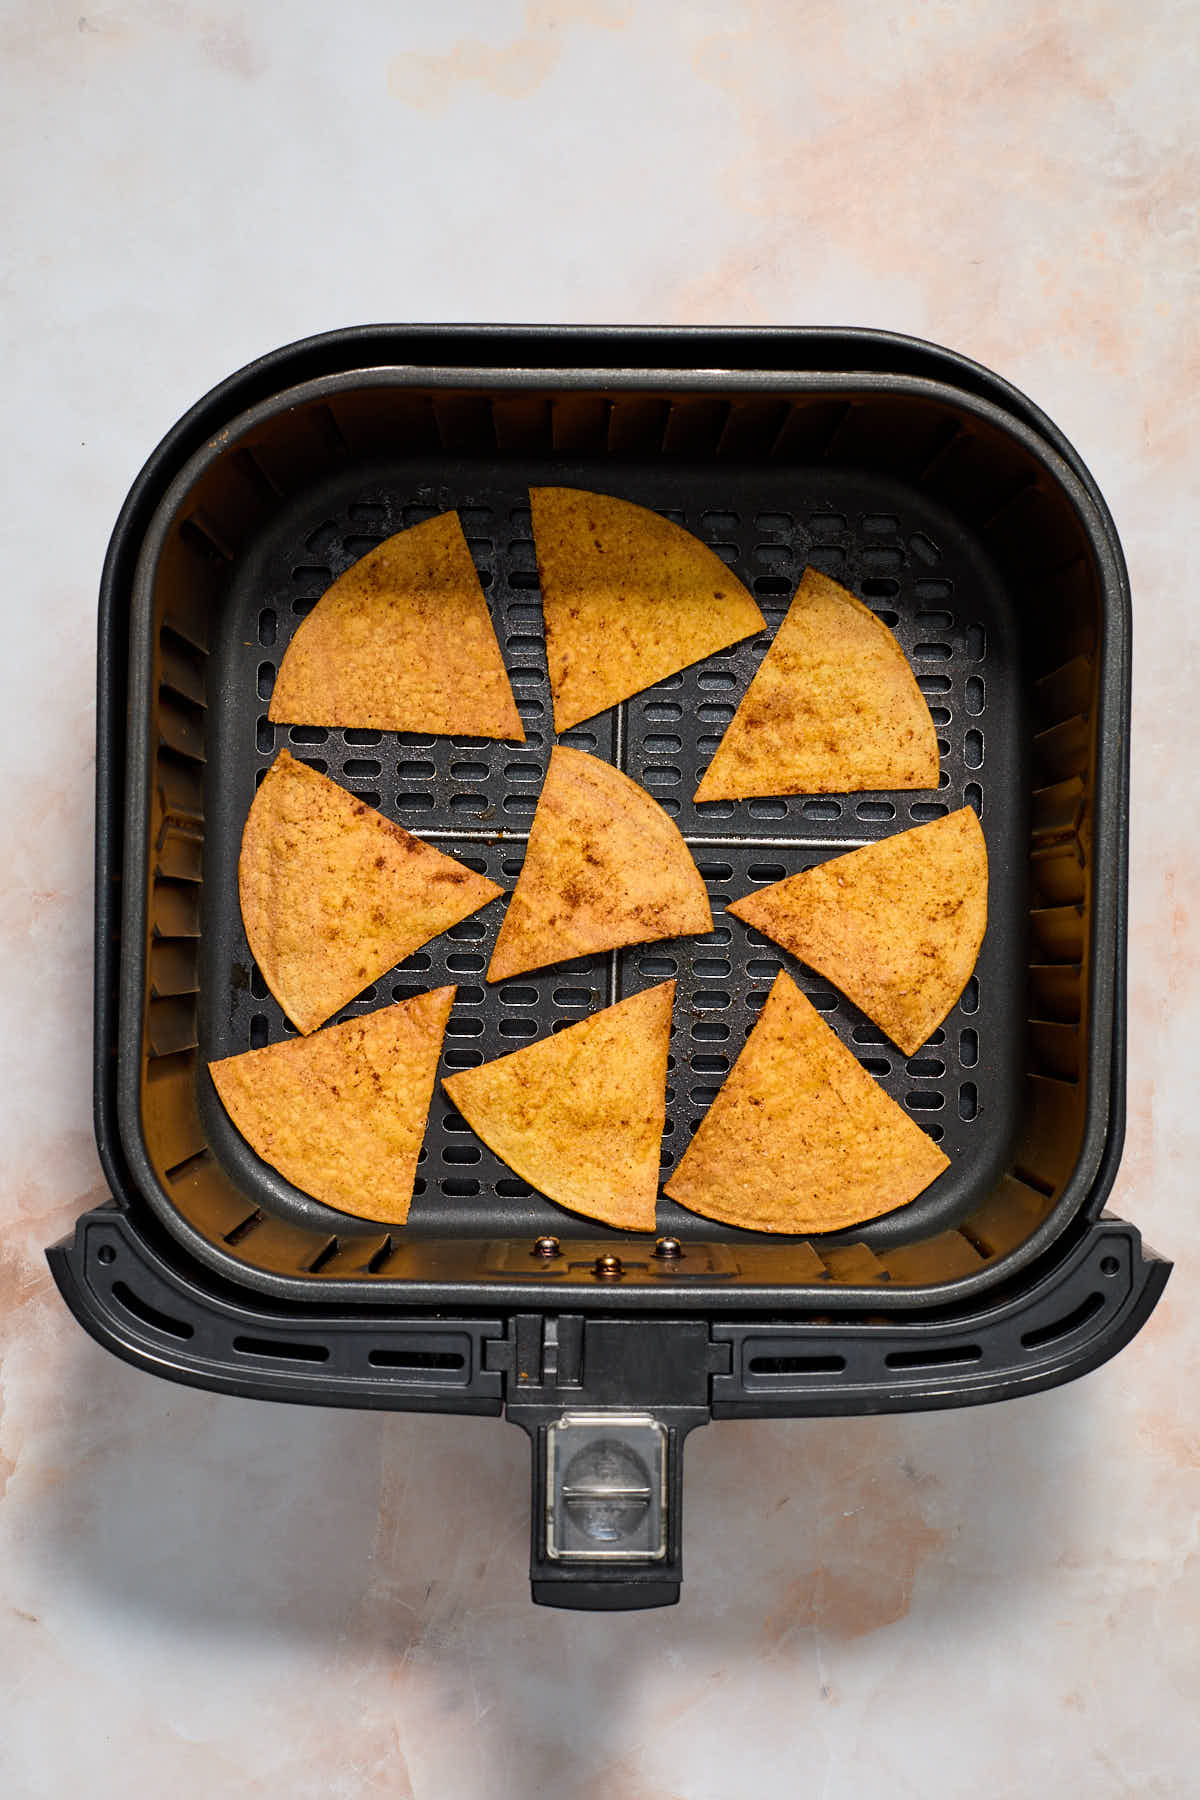 Air fried tortilla chips in an air fryer basket.